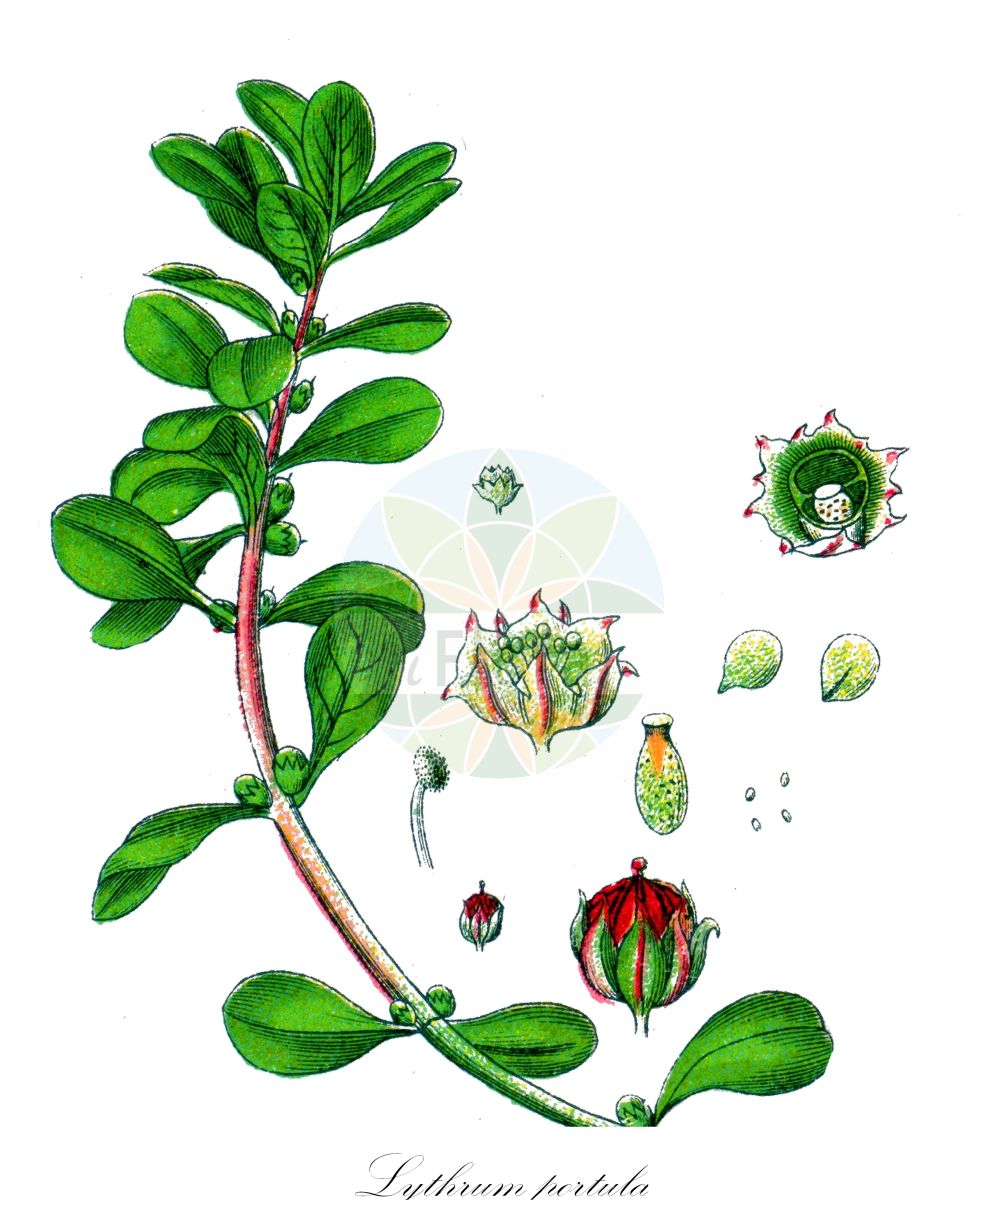 Historische Abbildung von Lythrum portula (Sumpfquendel - Water-purslane). Das Bild zeigt Blatt, Bluete, Frucht und Same. ---- Historical Drawing of Lythrum portula (Sumpfquendel - Water-purslane). The image is showing leaf, flower, fruit and seed.(Lythrum portula,Sumpfquendel,Water-purslane,Lythrum portula,Peplis longidentata,Peplis portula,Sumpfquendel,Gewoehnlicher Sumpfquendel,Water-purslane,Spatula-leaf Loosestrife,Lythrum,Weiderich,Loosestrife,Lythraceae,Blutweiderichgewächse,Loosestrife family,Blatt,Bluete,Frucht,Same,leaf,flower,fruit,seed,Sturm (1796f))